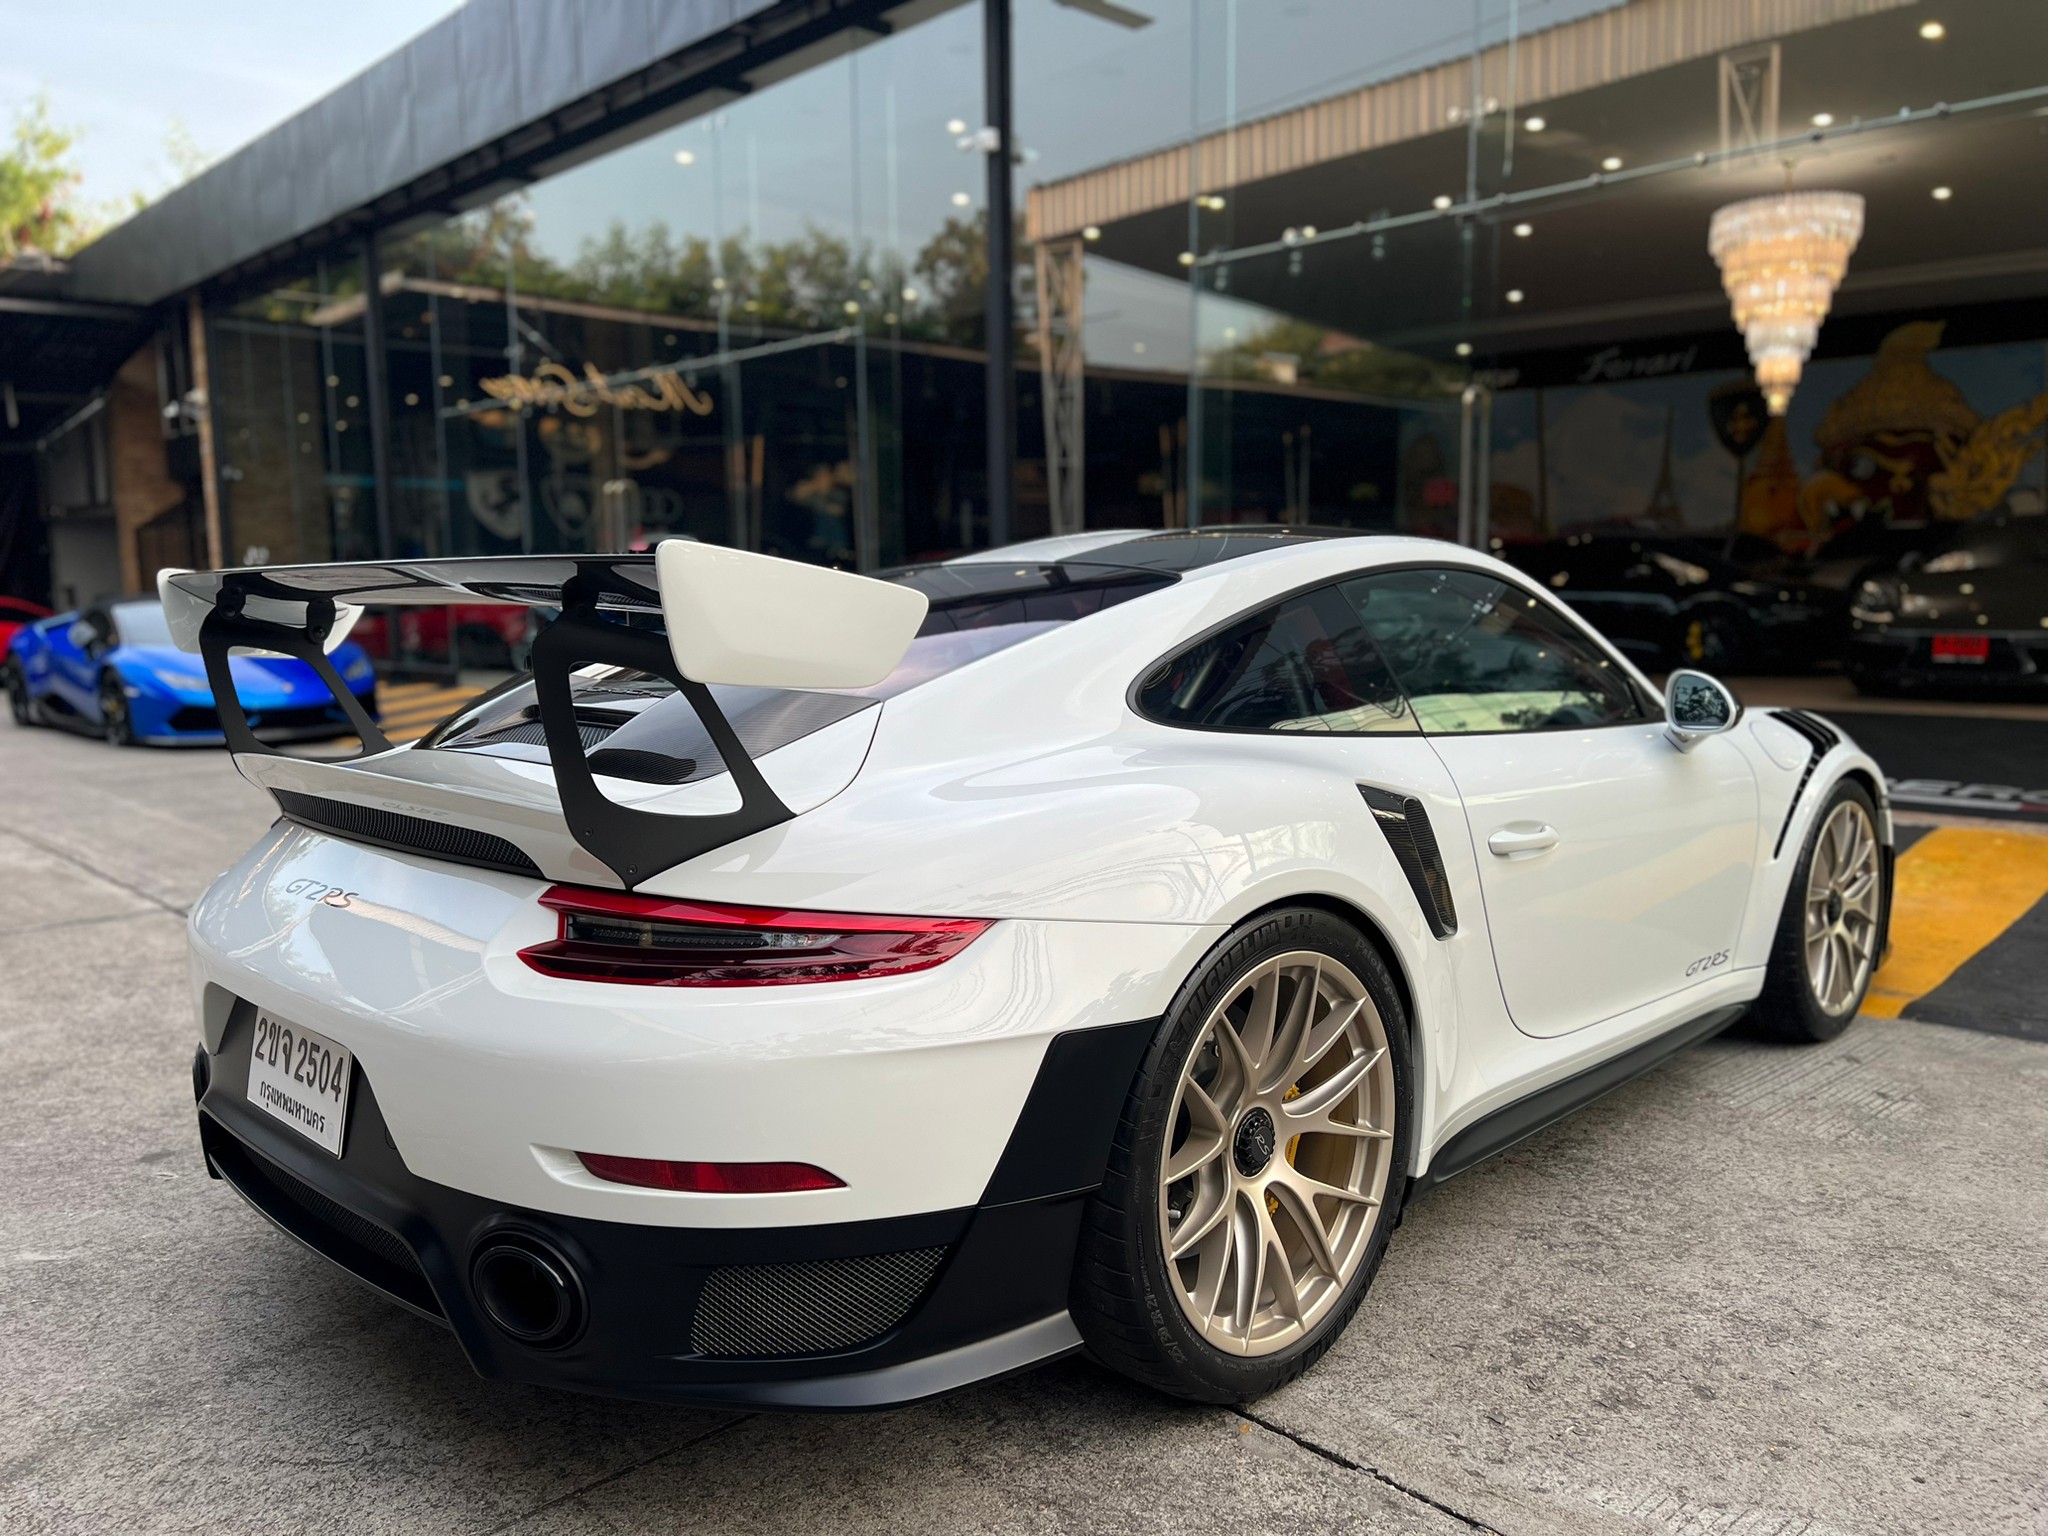 2019 Porsche 911 992 สีขาว